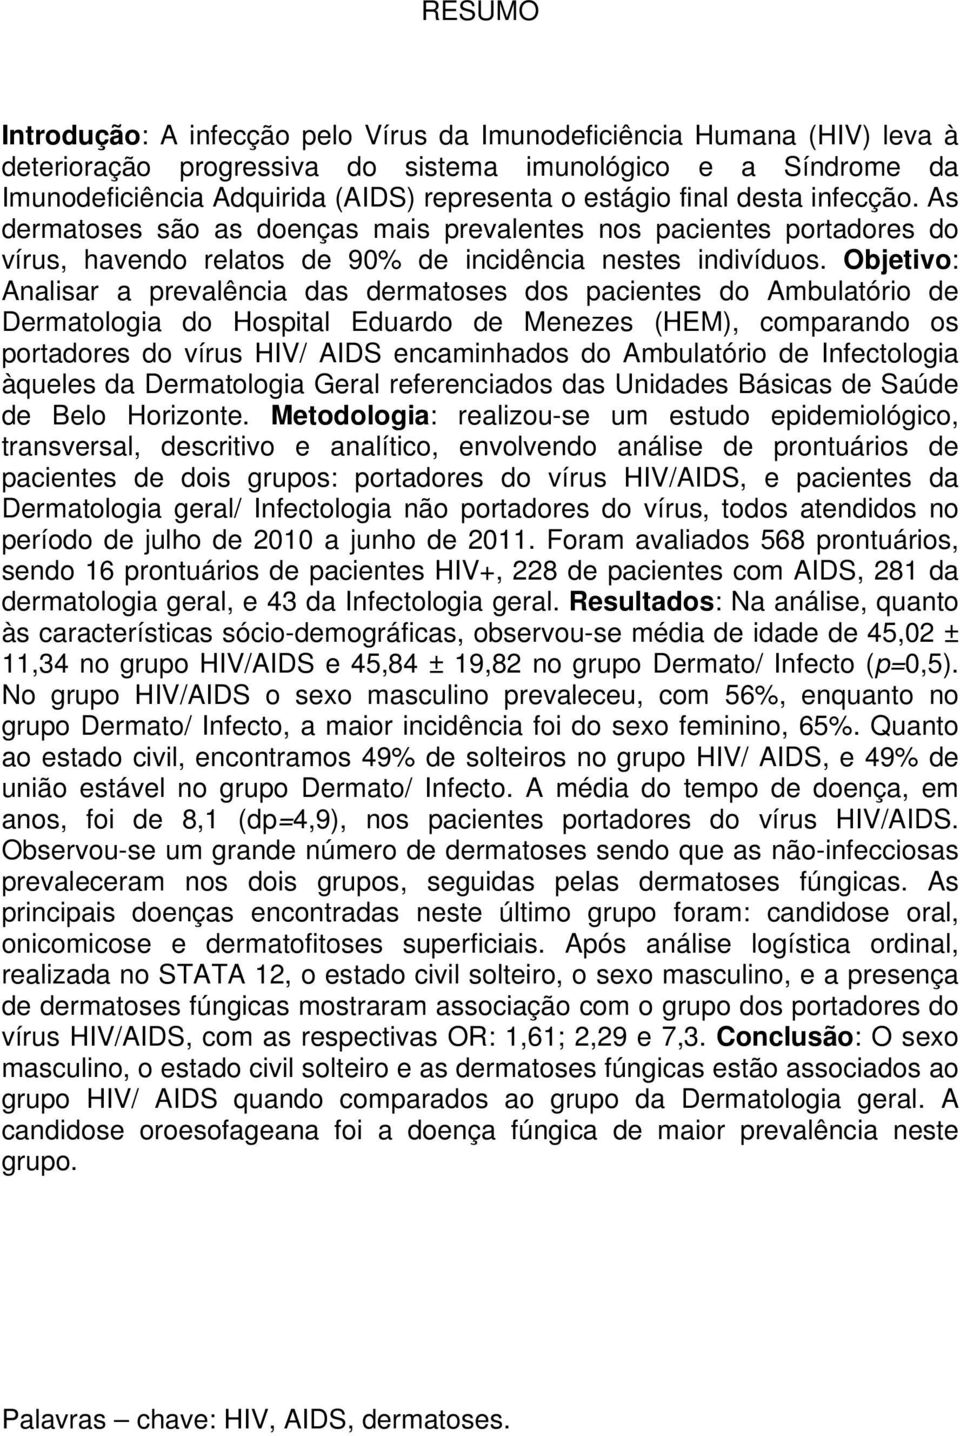 Objetivo: Analisar a prevalência das dermatoses dos pacientes do Ambulatório de Dermatologia do Hospital Eduardo de Menezes (HEM), comparando os portadores do vírus HIV/ AIDS encaminhados do